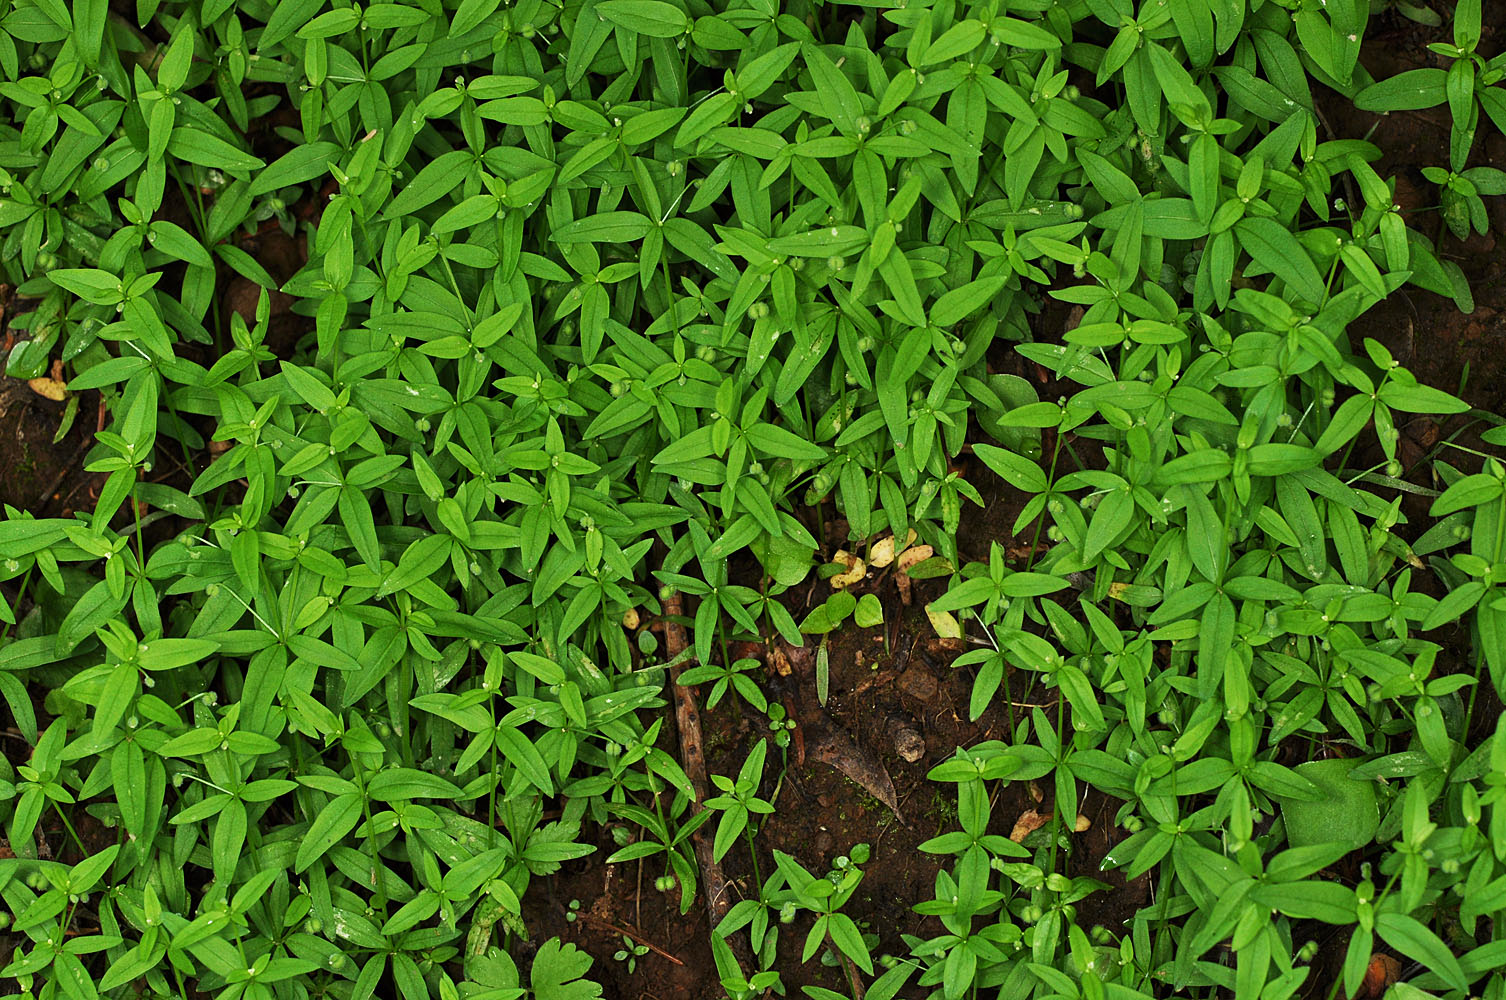 Flora of Eastern Washington Image: Galium bifolium